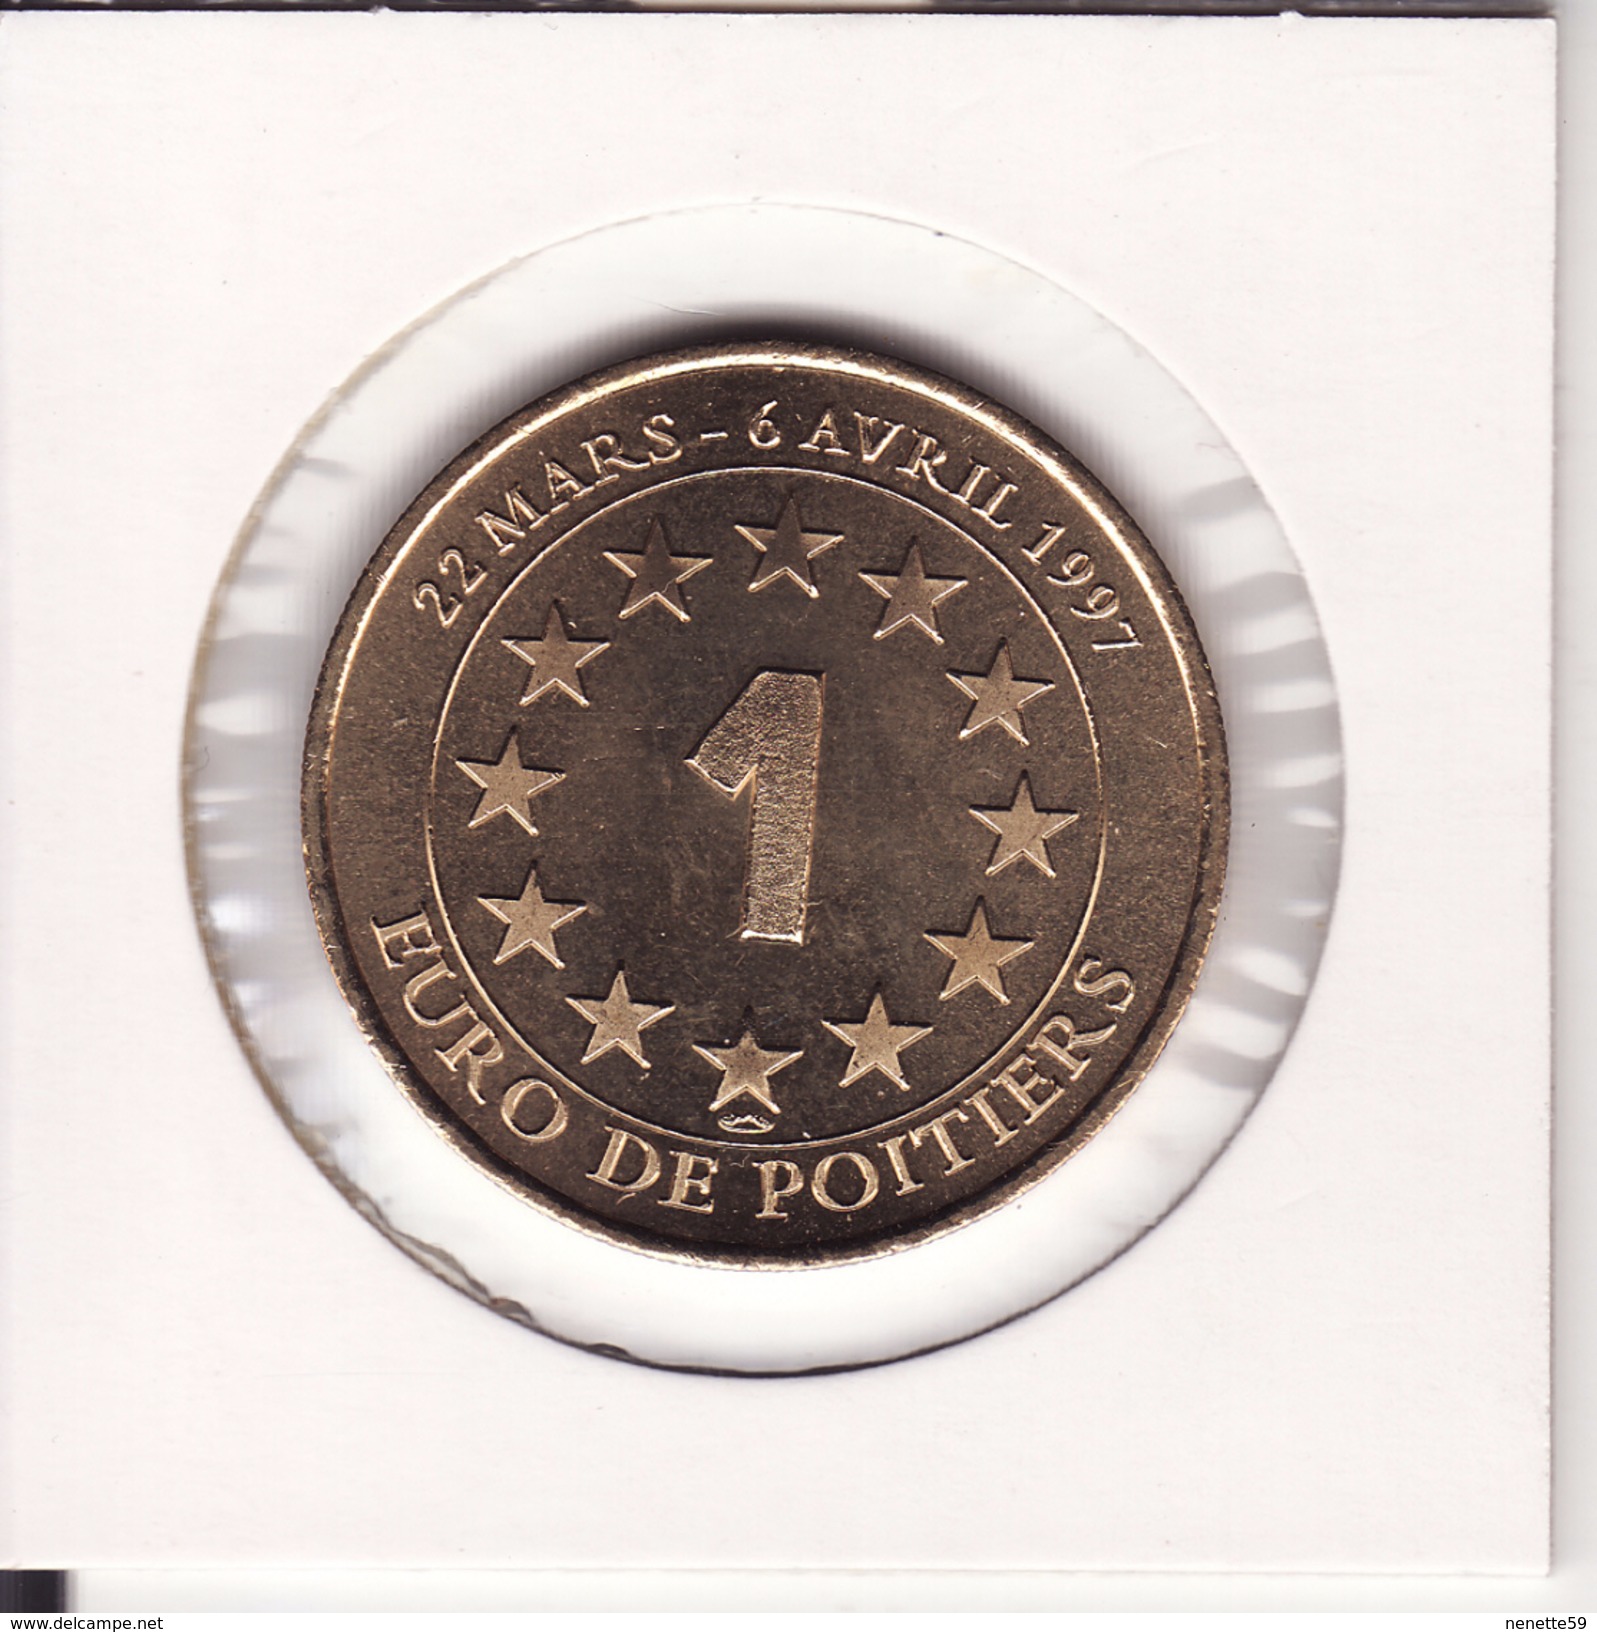 Médaille 1 Euro De POITIERS 1997 -- FUTUROSCOPE - Euros Of The Cities